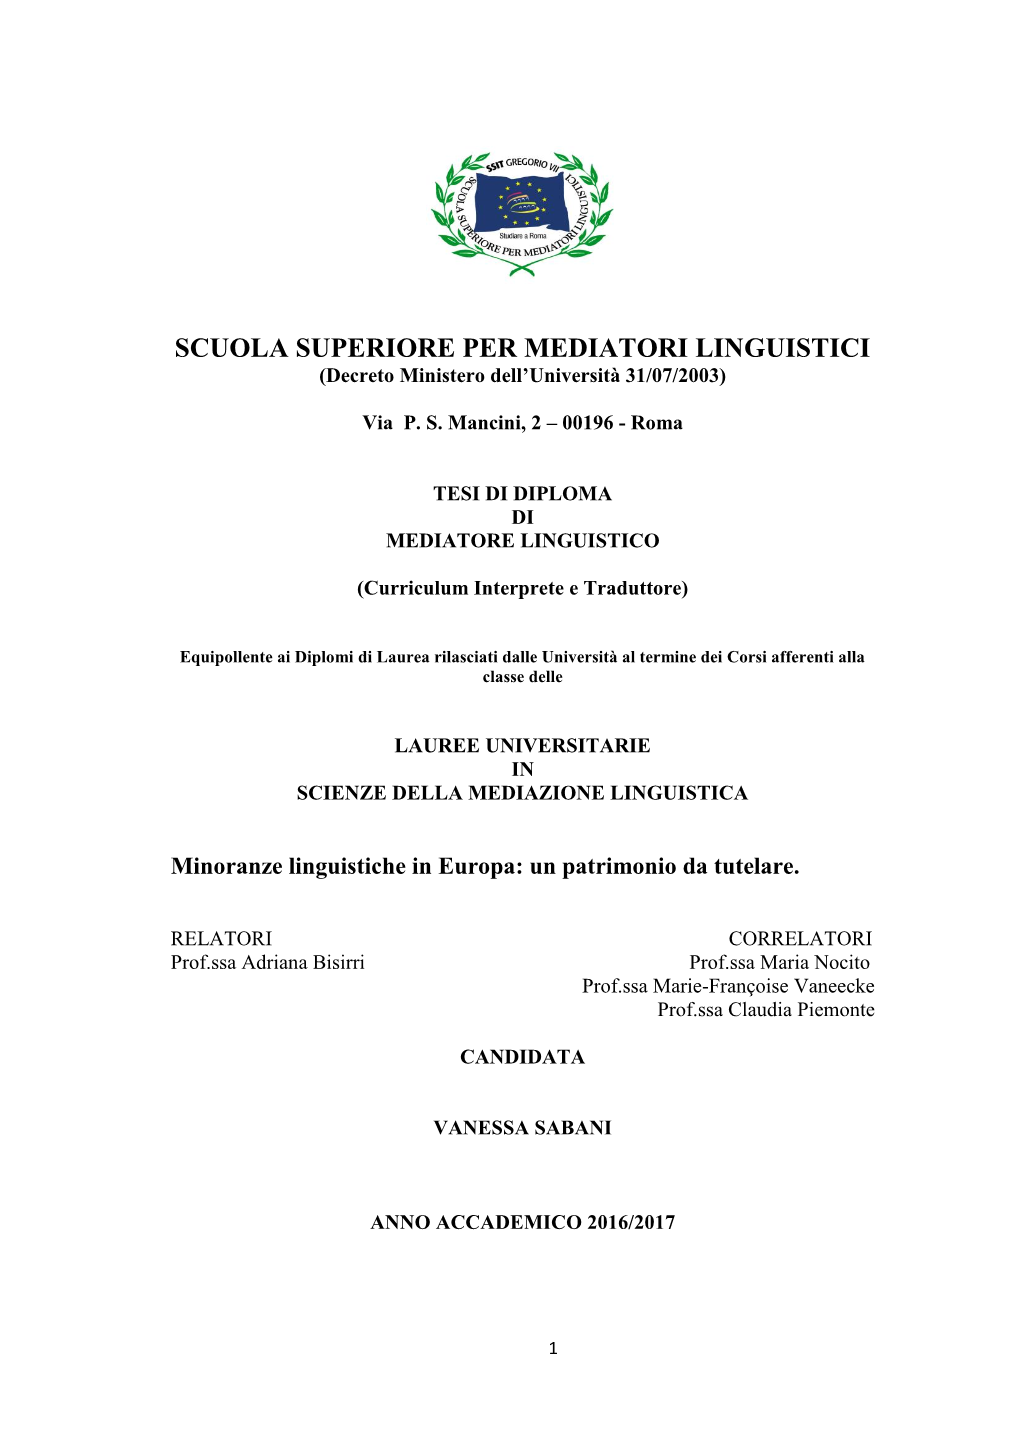 SCUOLA SUPERIORE PER MEDIATORI LINGUISTICI (Decreto Ministero Dell’Università 31/07/2003)